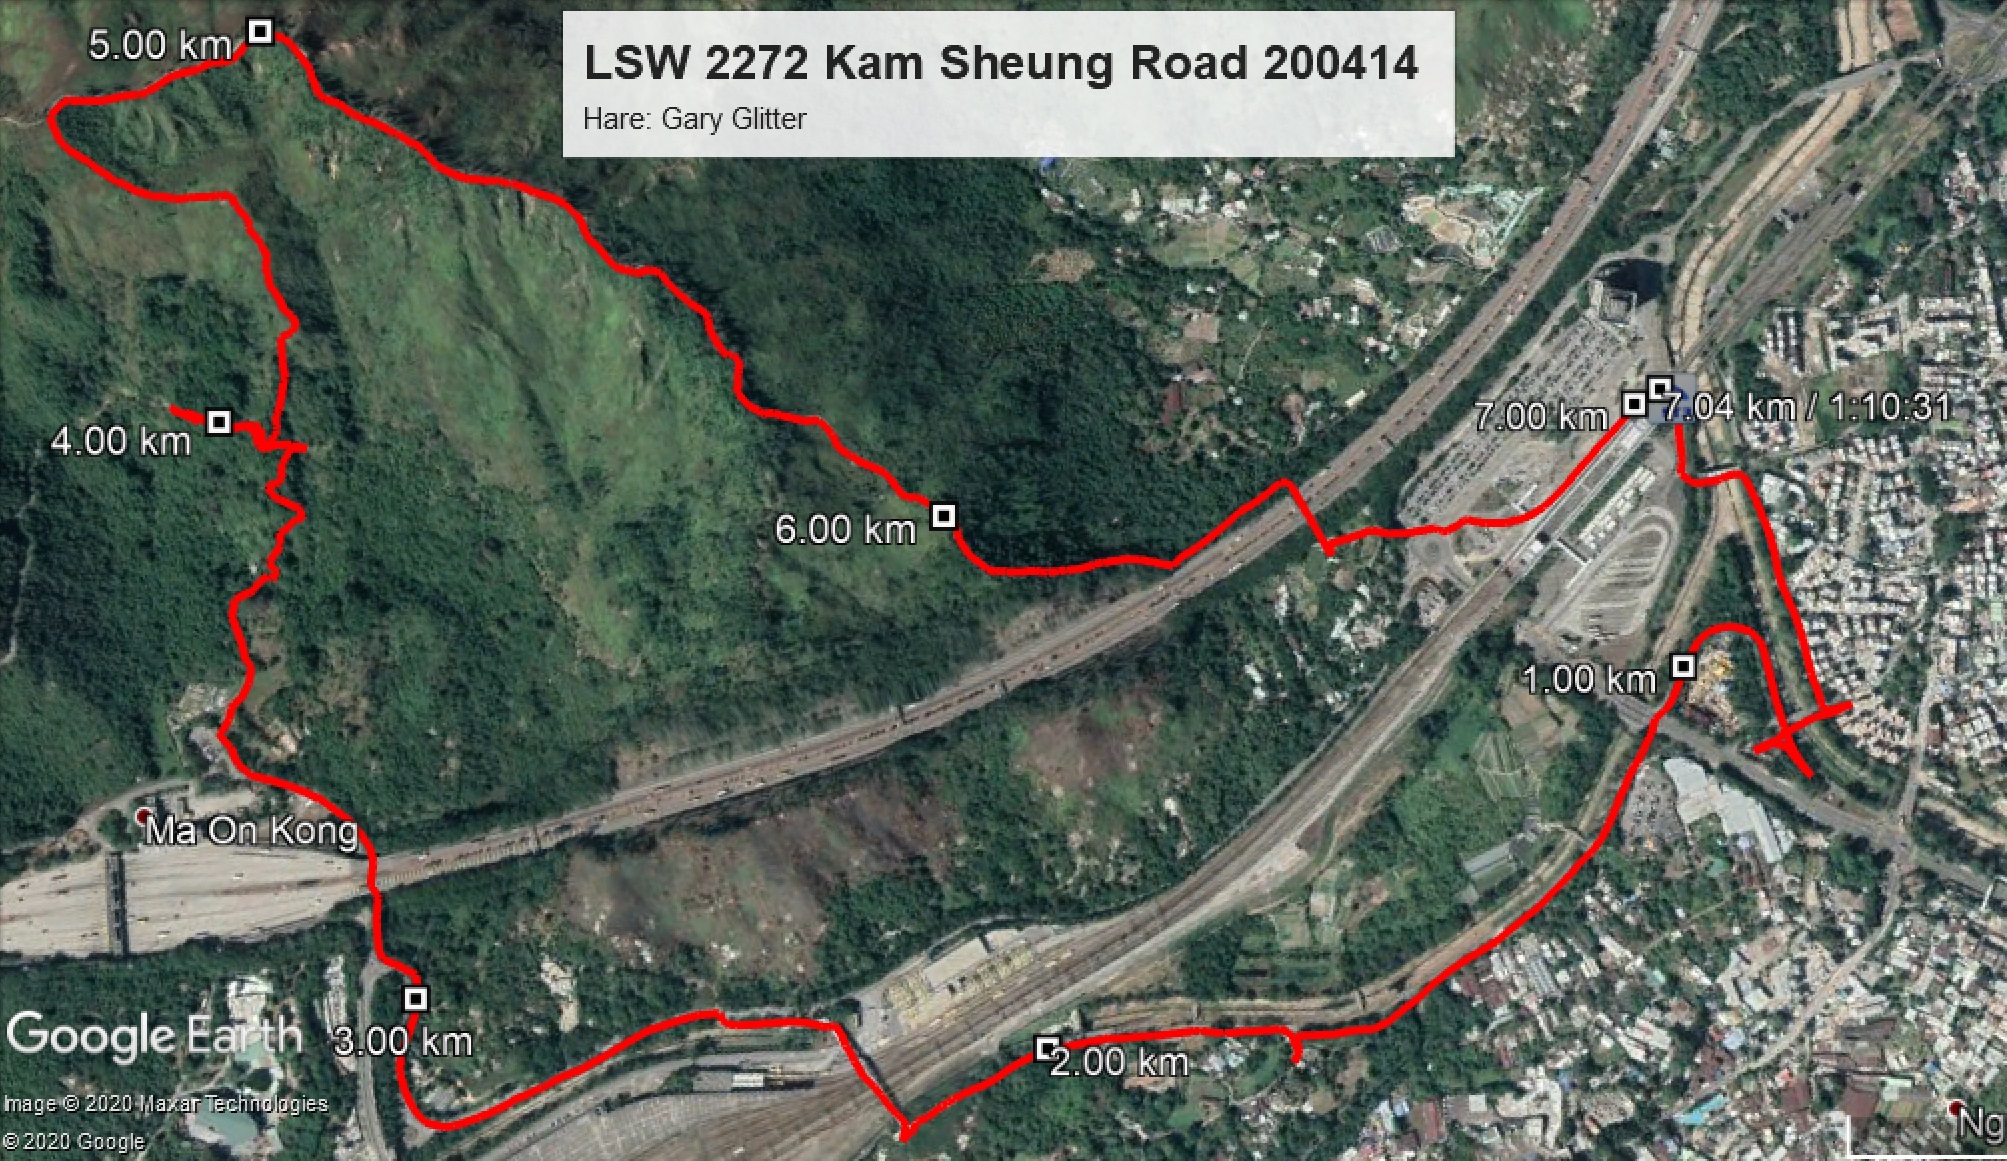 Kam Sheung Road 200414 7.04km 70mins